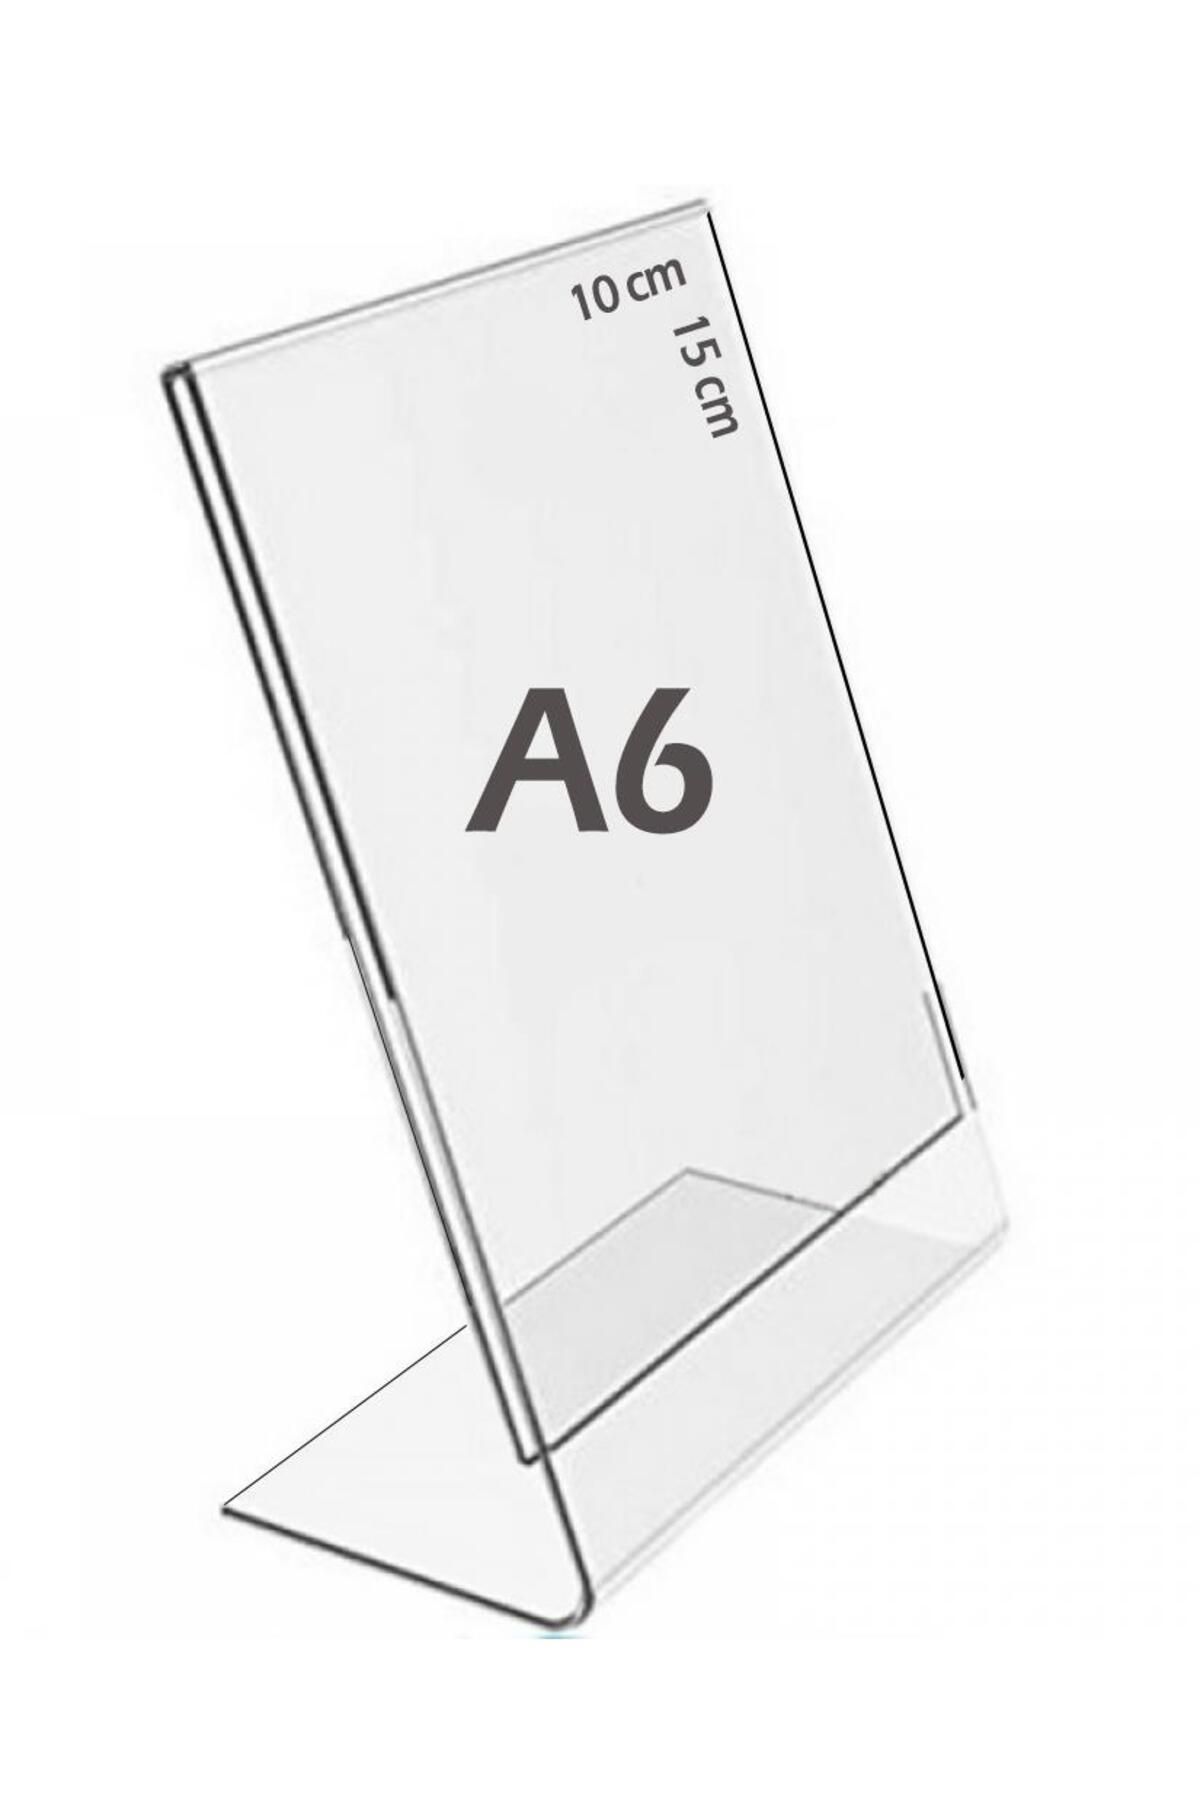 Bestekran A6 L-tipi Dikey Şeffaf Föylük Menü Fiyatlık Broşür Etiket Fotoğraflık Albüm Stand Sehpa